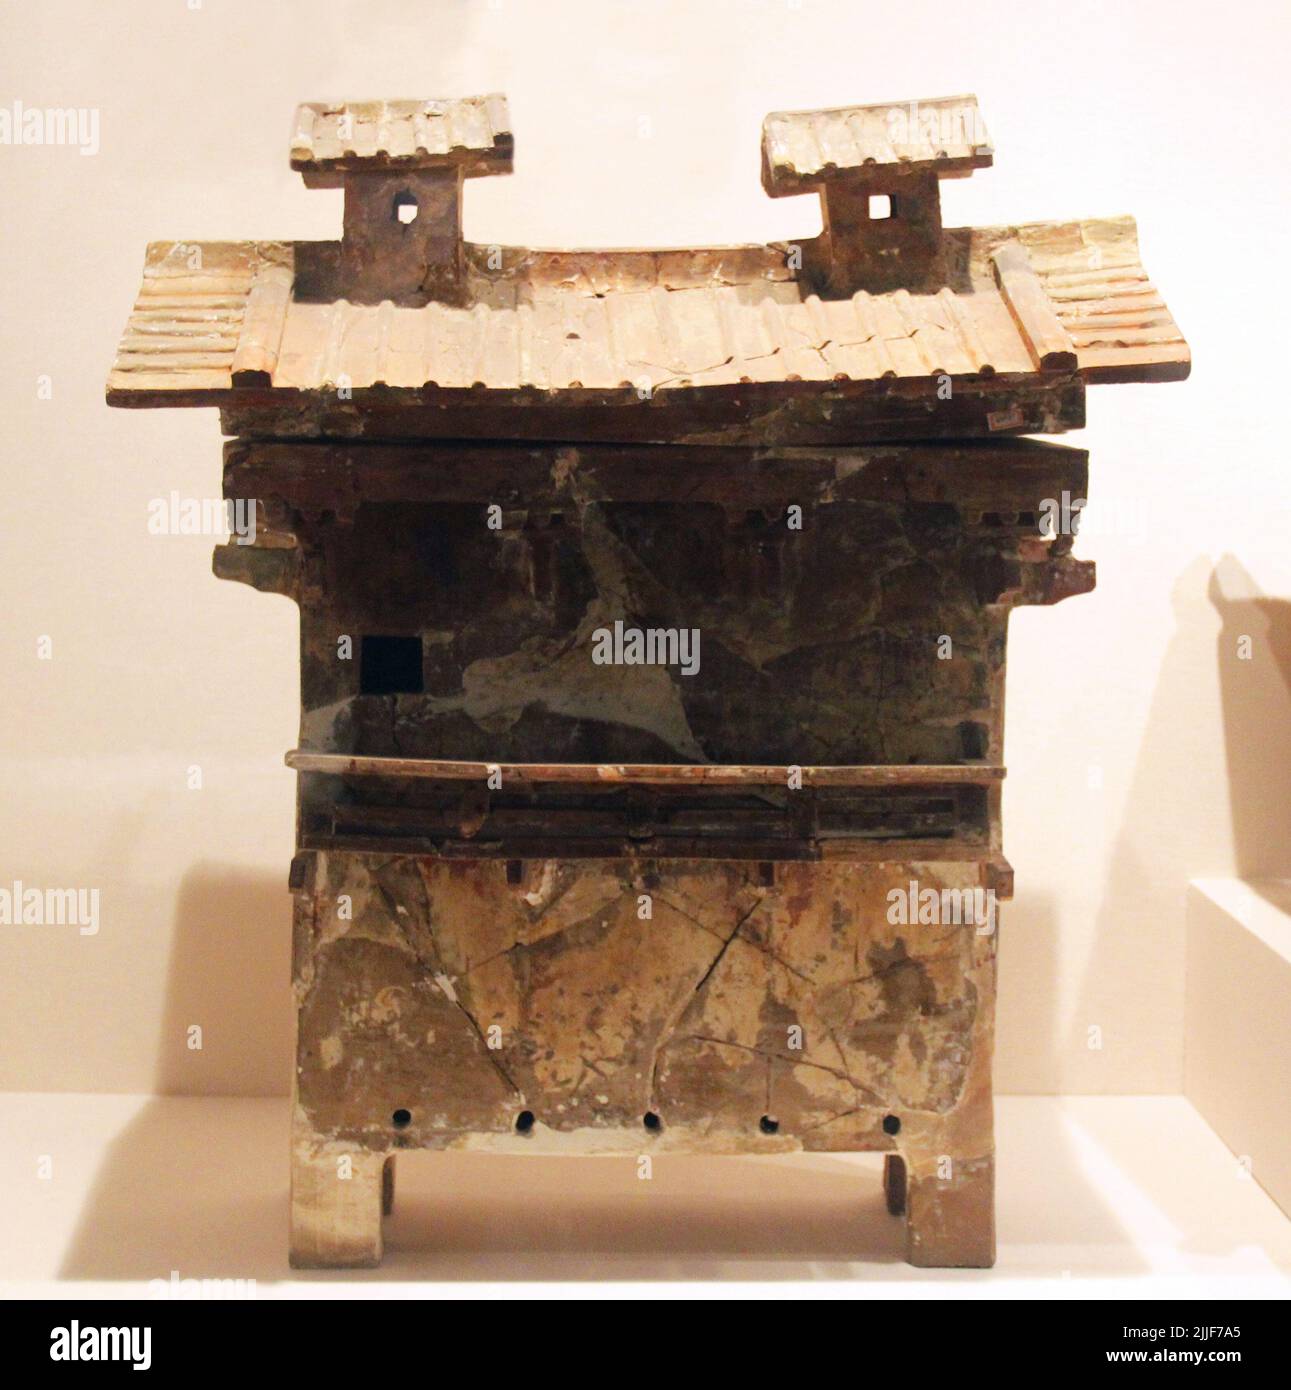 China: Keramikmodell eines Getreidespeichers, Östliche Han-Dynastie (25-220 n. Chr.), Provinzmuseum Shandong, Jinan. Die Han Dynastie war eine imperiale Dynastie, die während eines goldenen Zeitalters in der chinesischen Geschichte regierte und seitdem die Identität der chinesischen Zivilisation beeinflusst hat. Zuerst von Kaiser Gao (Liu Bang) gegründet, wurde es kurz von der Xin Dynastie (9-23 CE) usurpiert, so wird in zwei Perioden unterteilt: Die westliche Han (202 v. Chr. - 9 CE) und die östliche Han (25-220 CE). Porzellan und Keramik wurden in großen Mengen während der Han-Dynastie hergestellt, wobei die Entwicklungen in neuen Techniken und Kunstformen führend waren Stockfoto